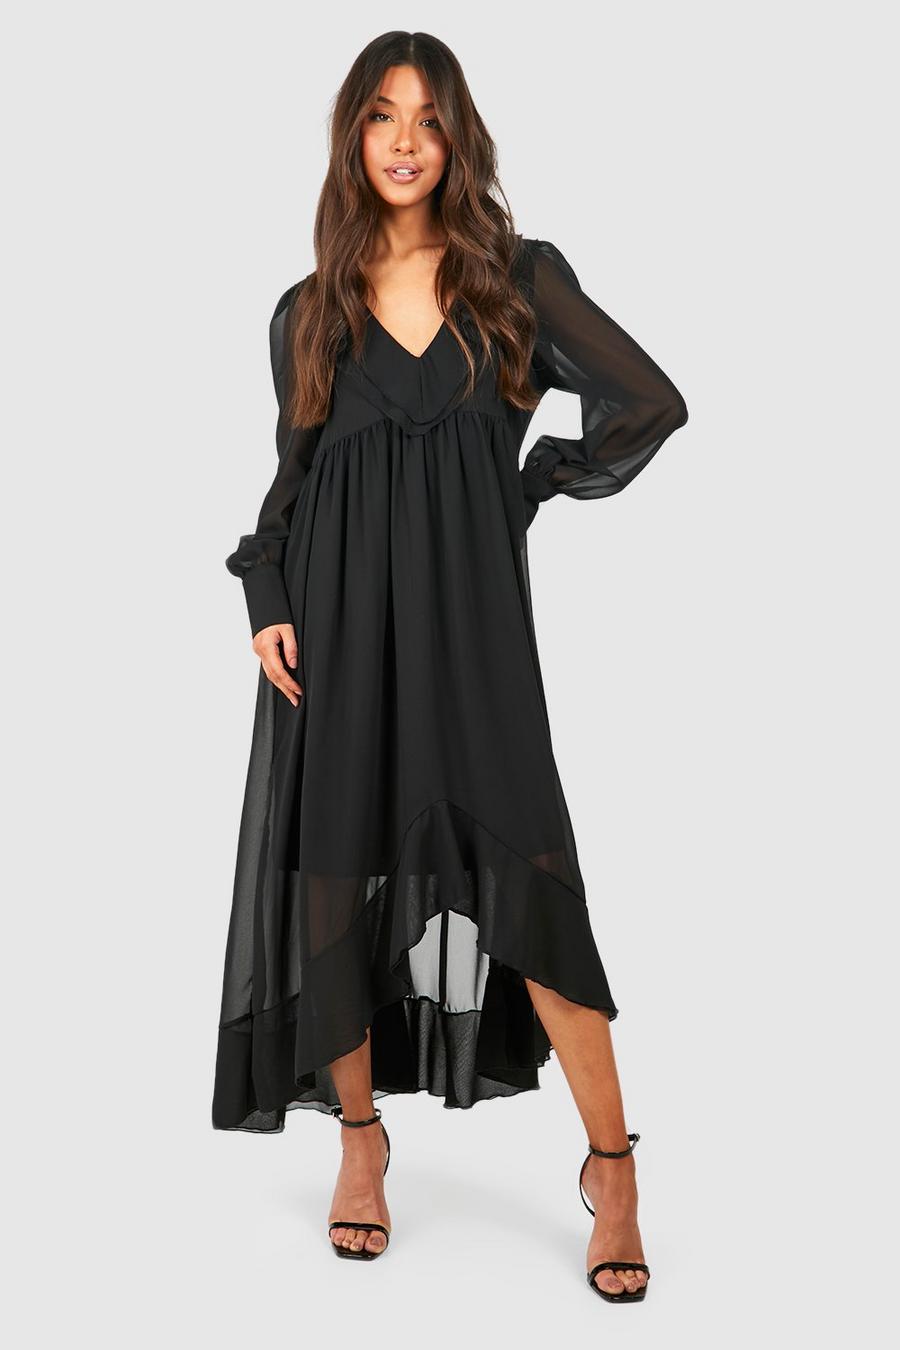 Black Chiffon Ruffle Midaxi Dress